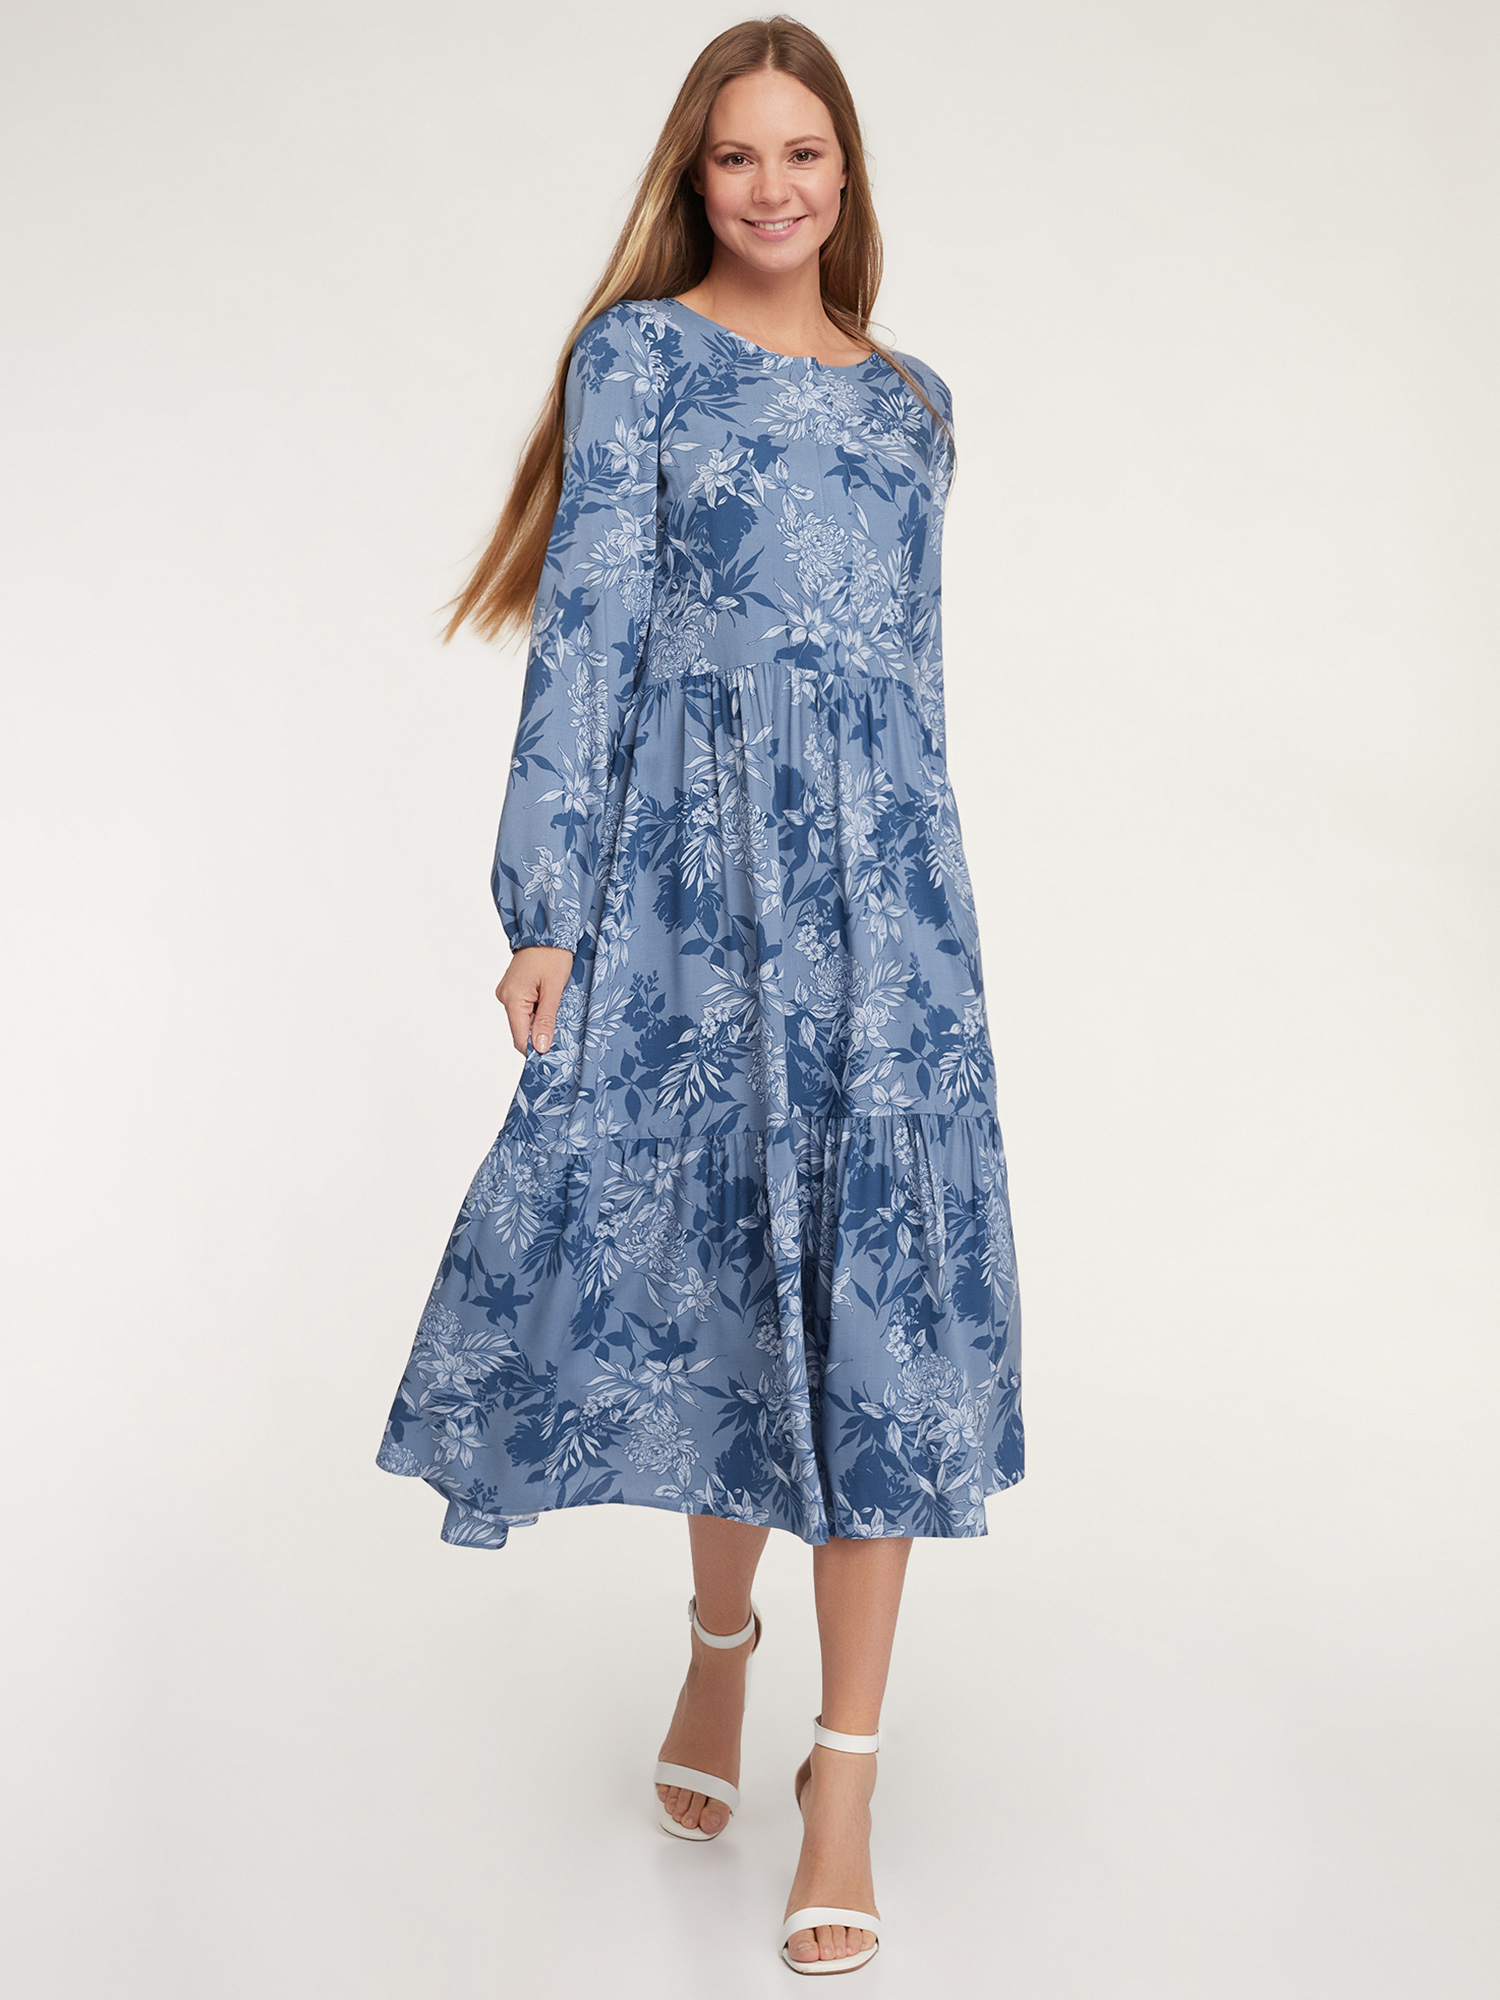 Платье женское oodji 11901165-1 синее 34 EU - купить в Москве, цены на Мегамаркет | 100042061765